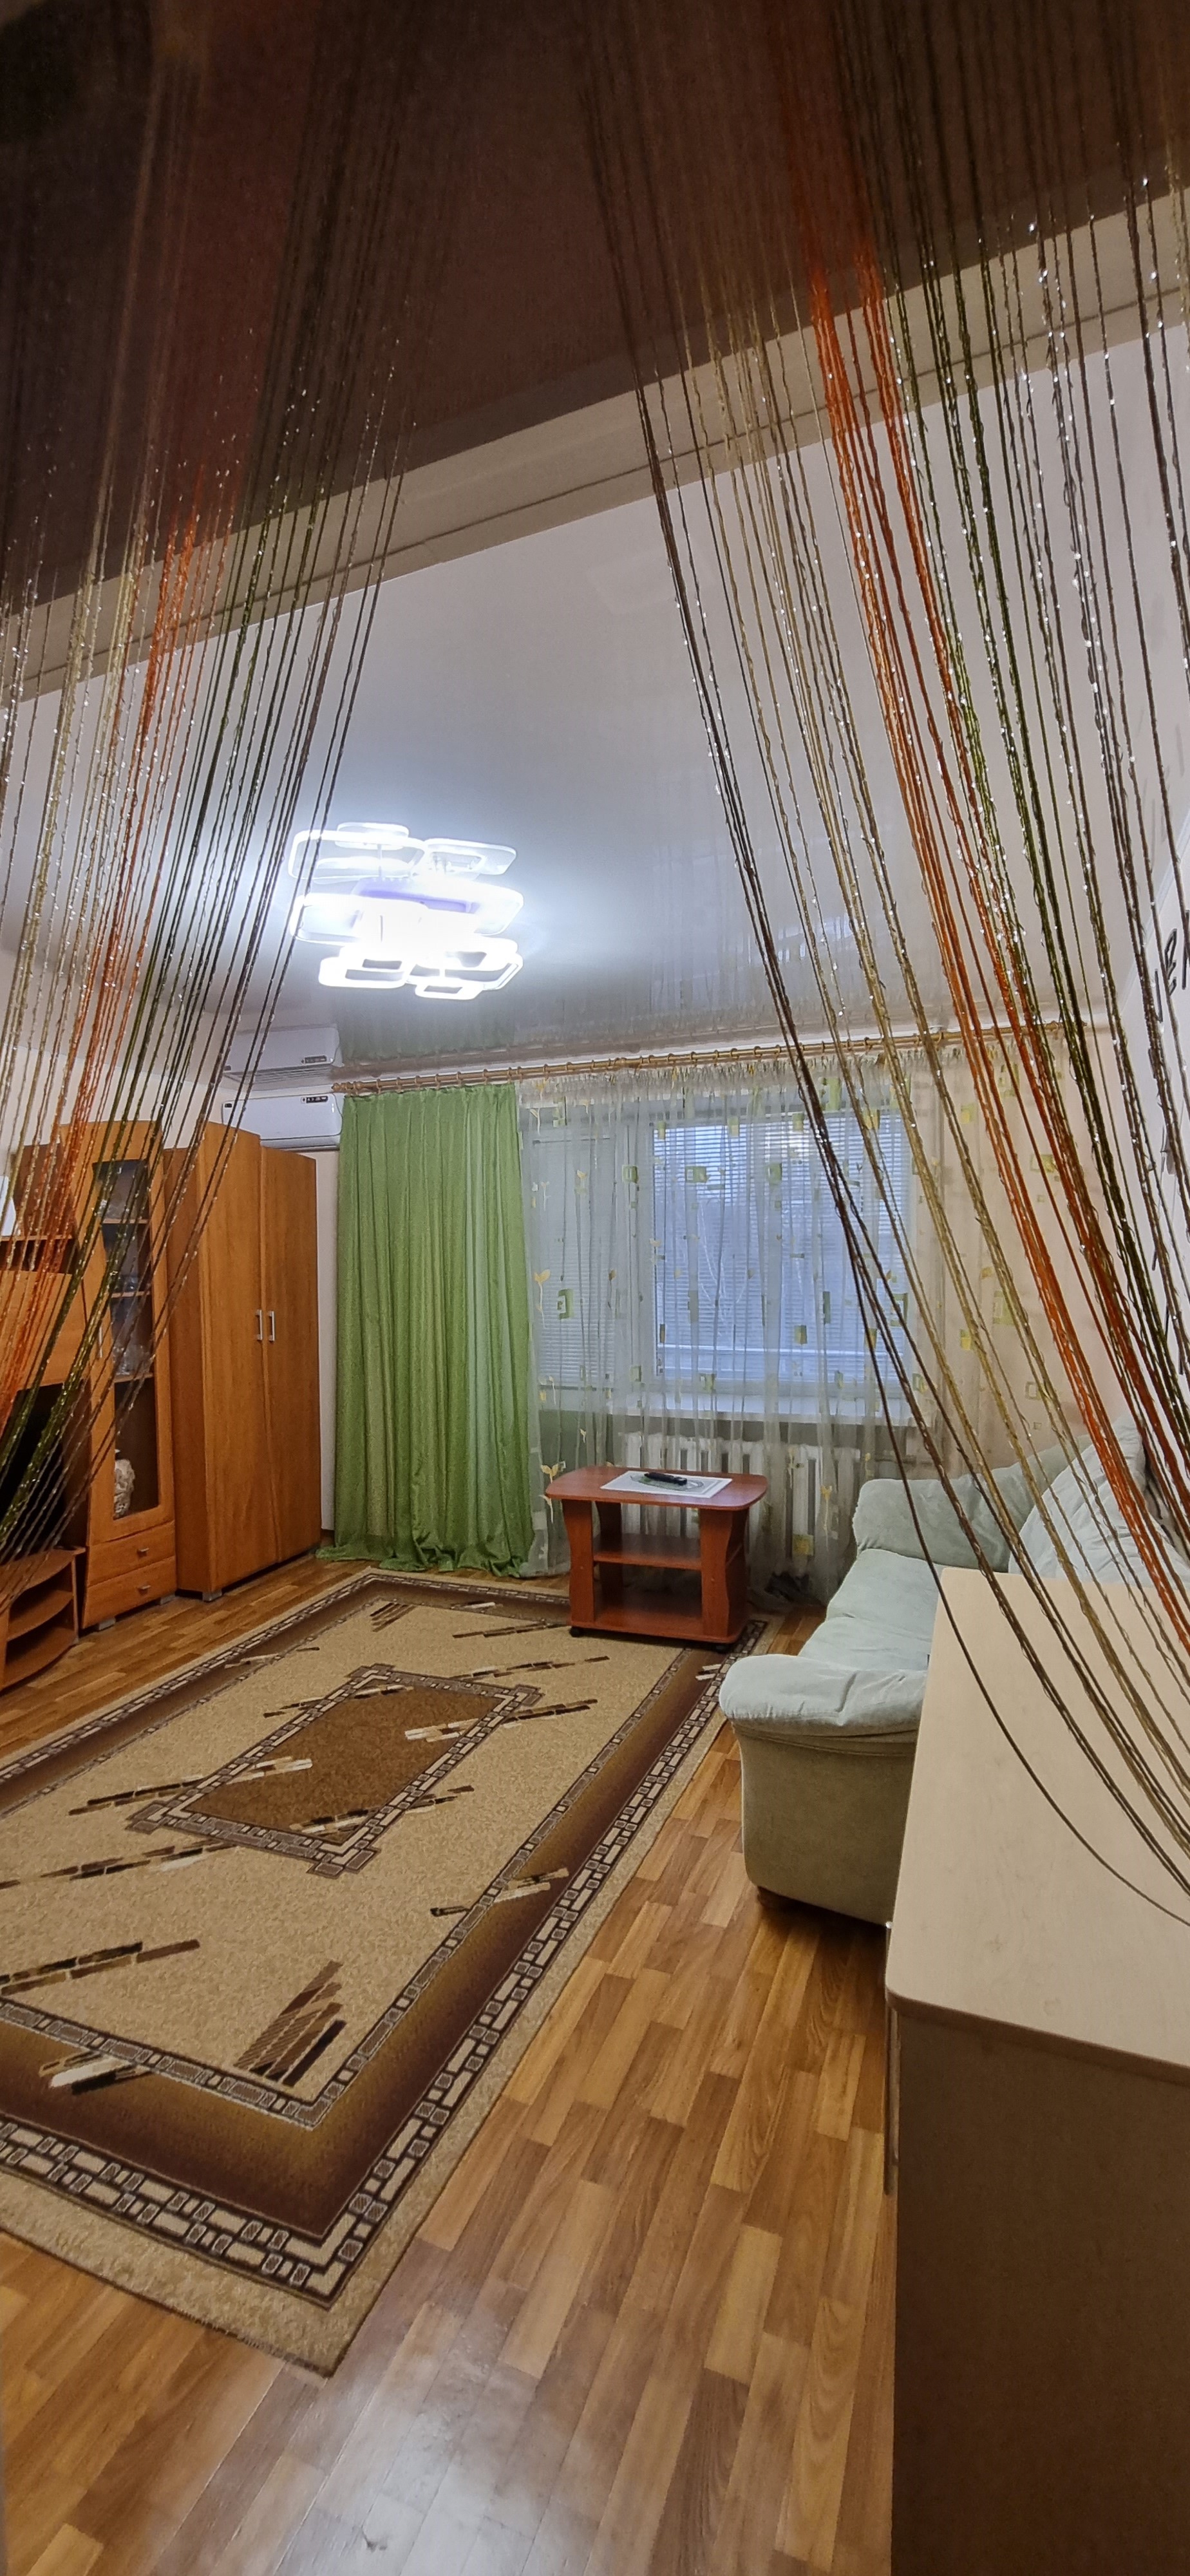 изображение,скриншот № 3 к Посуточно 1 комнатная квартира в самом центре Луганска.